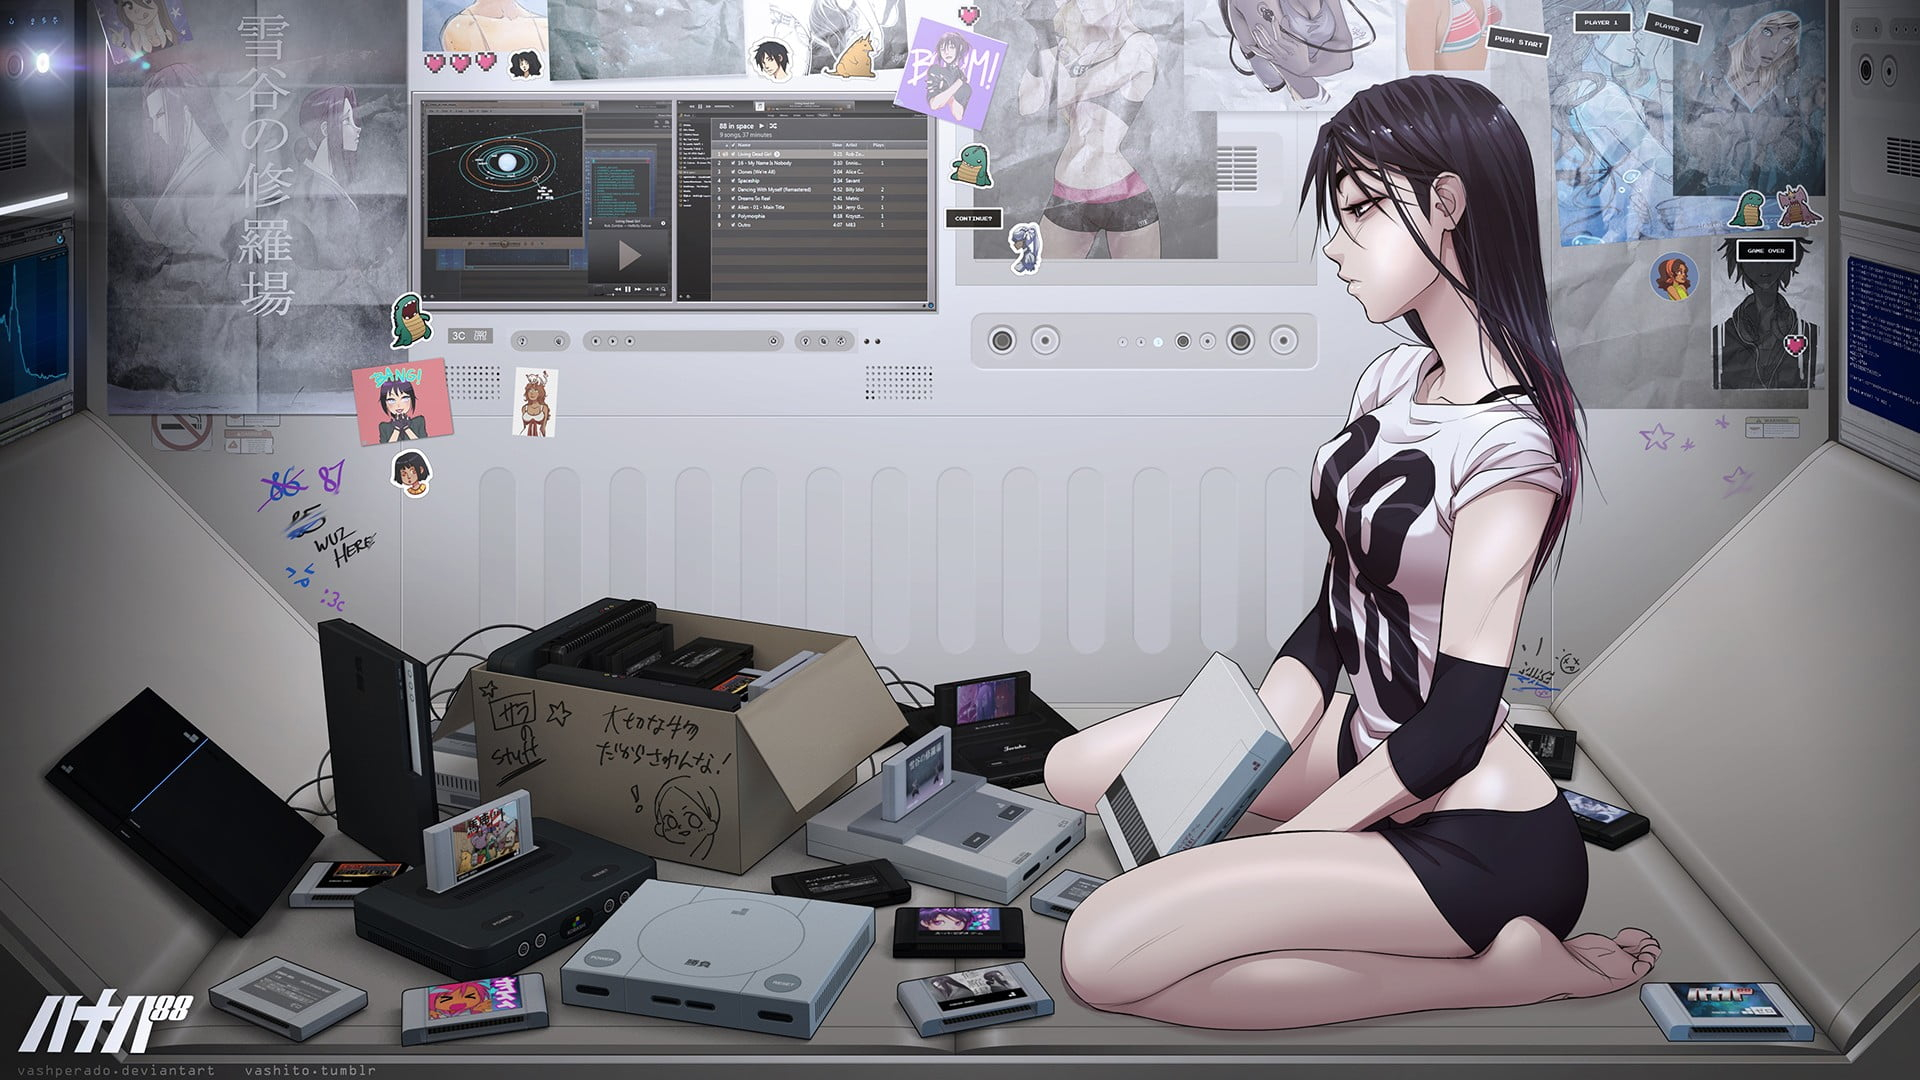 Wallpaper: black haired female anime character, female anime character on table